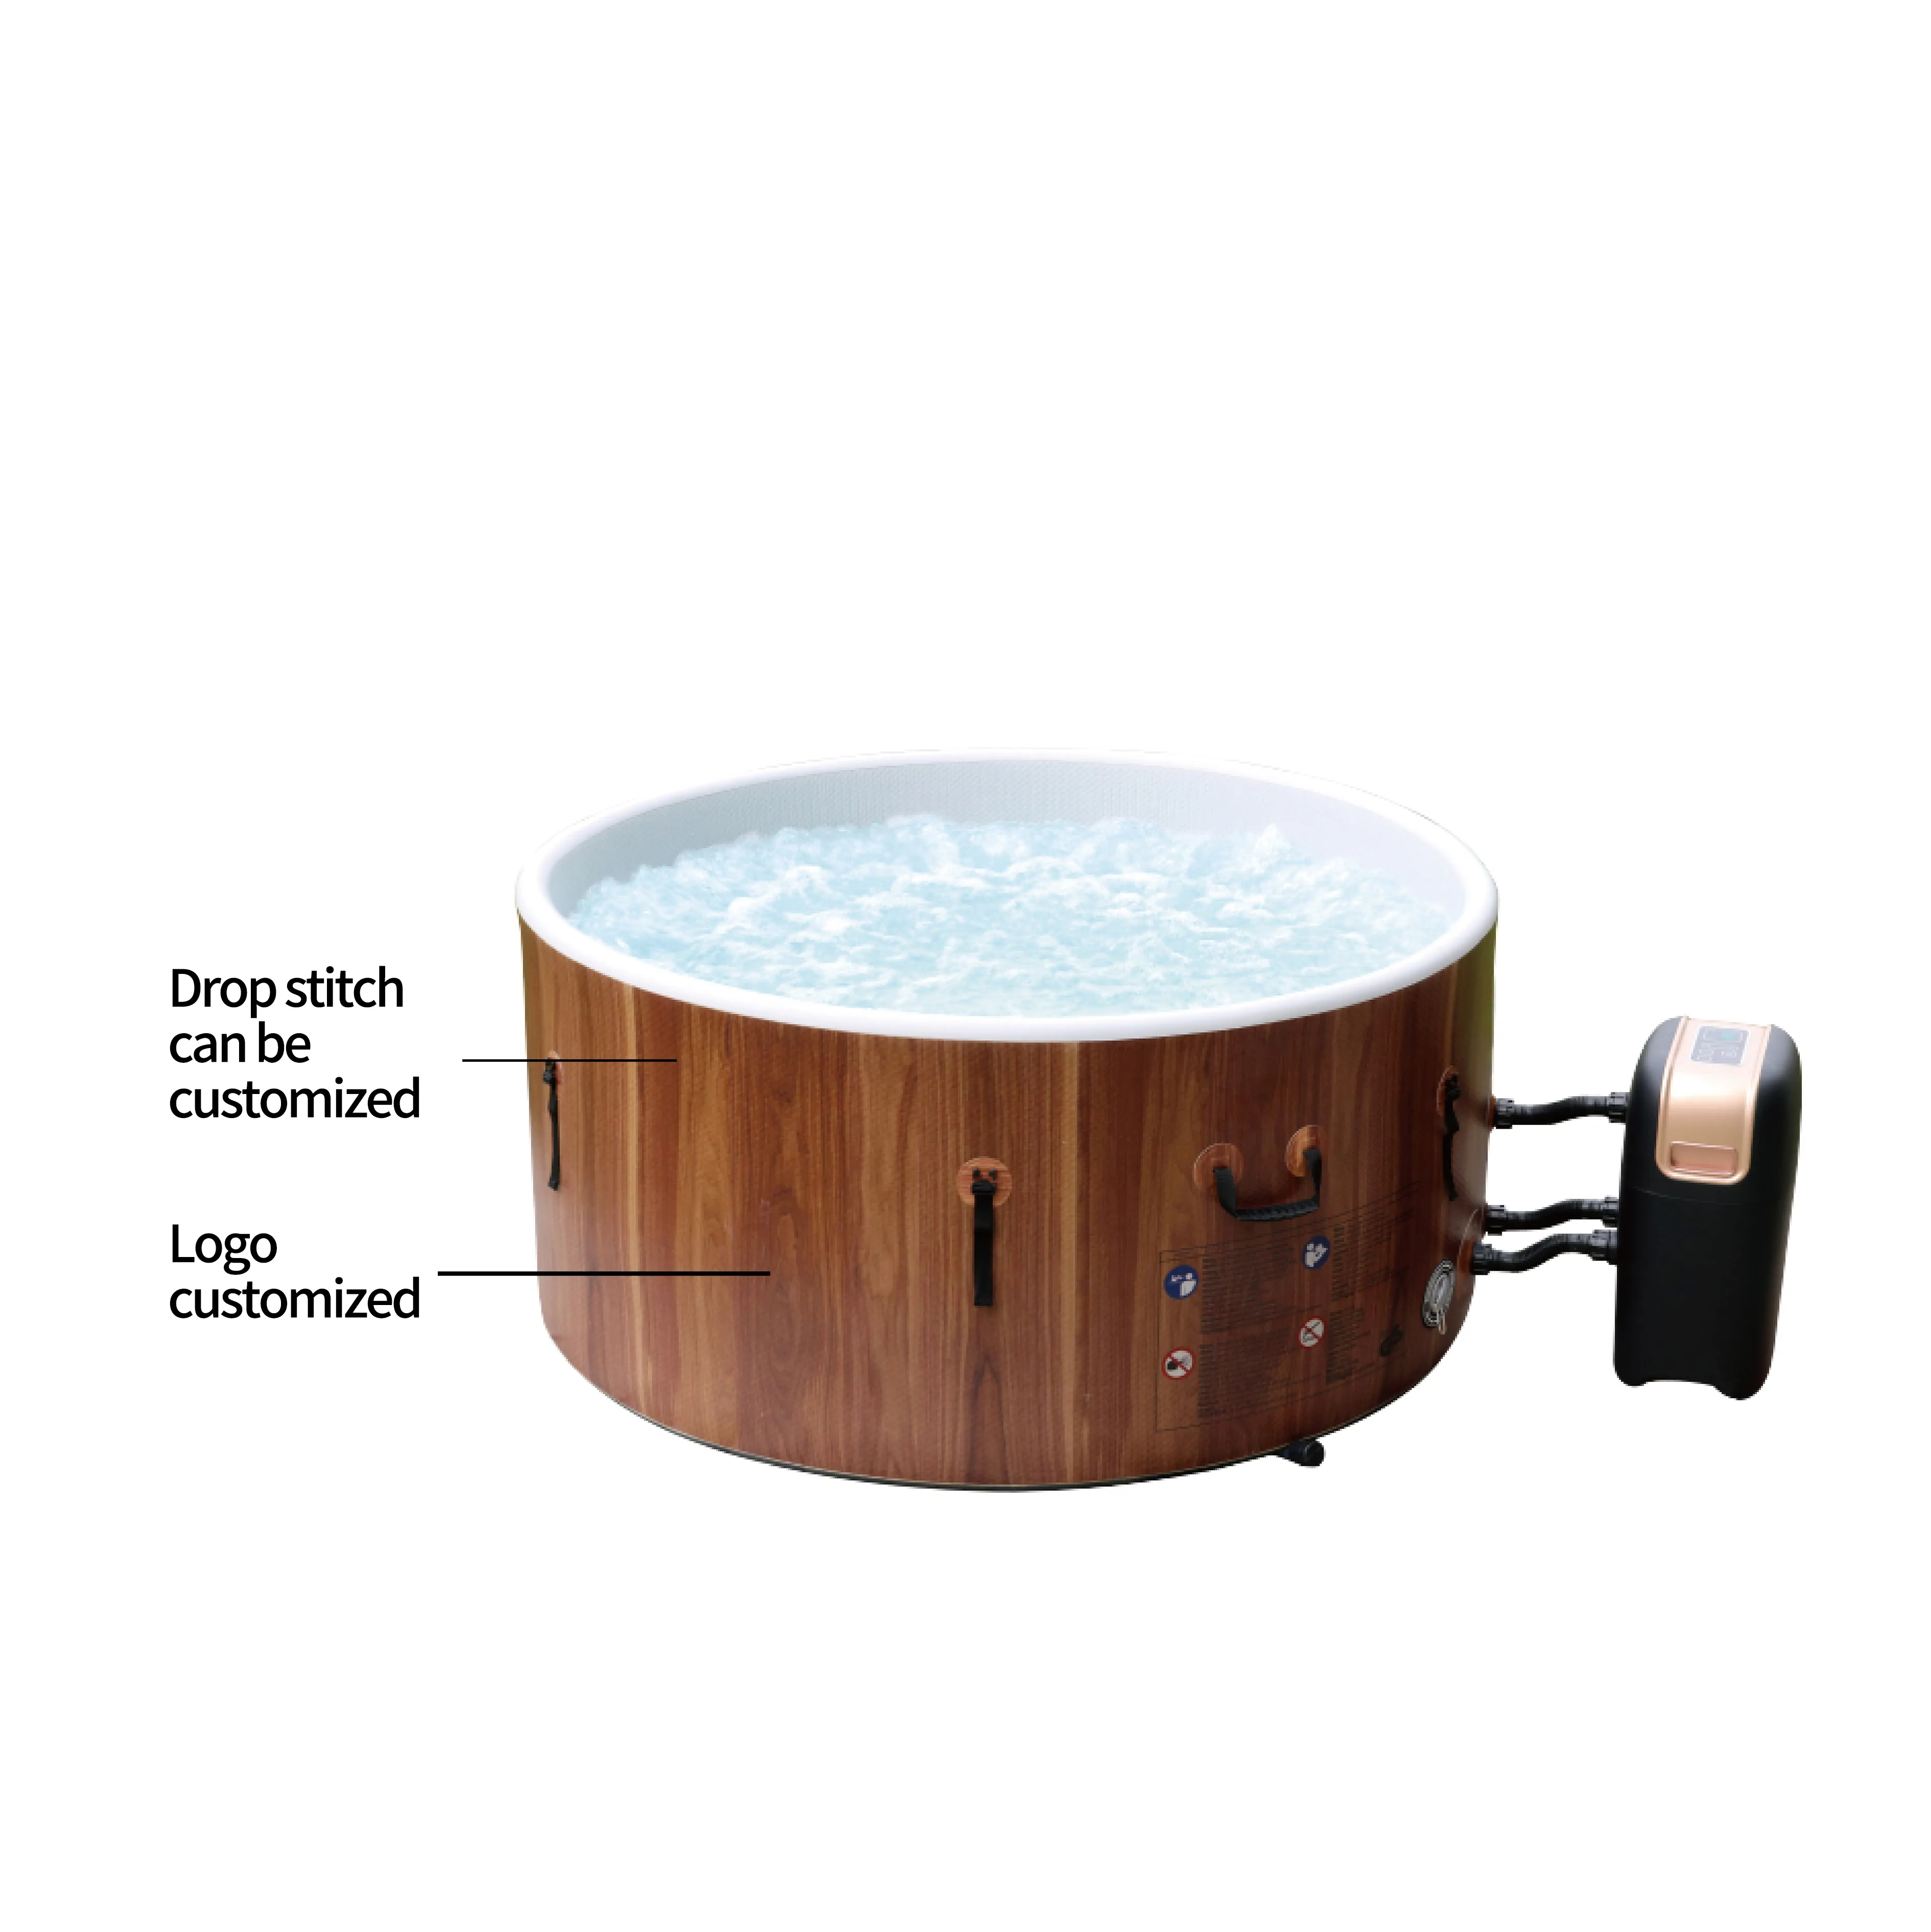 Vasche Spa in legno Pvc di nuovo Design piscine per massaggi vasche termali gonfiabili durevoli